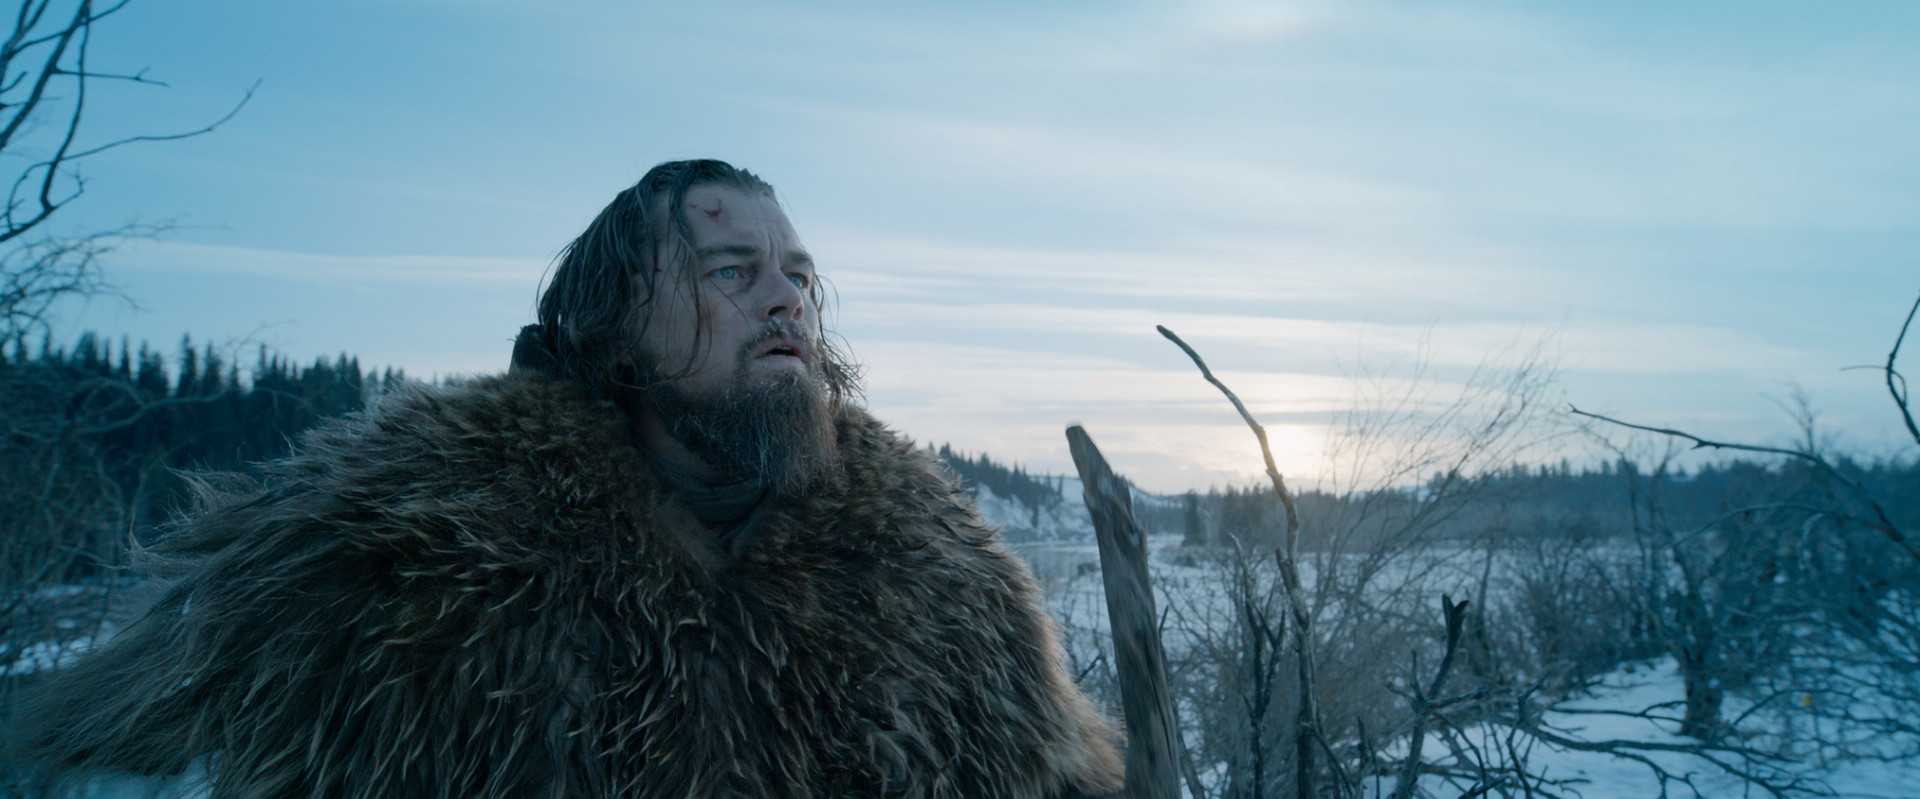 Leonardo DiCaprio získal za film Revenant Zmŕtvychvstanie Oscara za najlepšieho herca v roku 2015